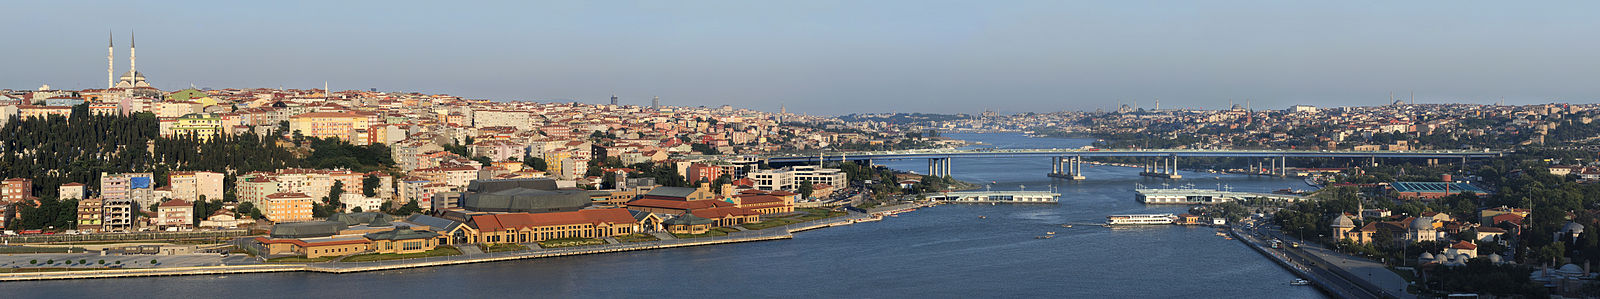 Panoramatická fotografia mesta Istanbul